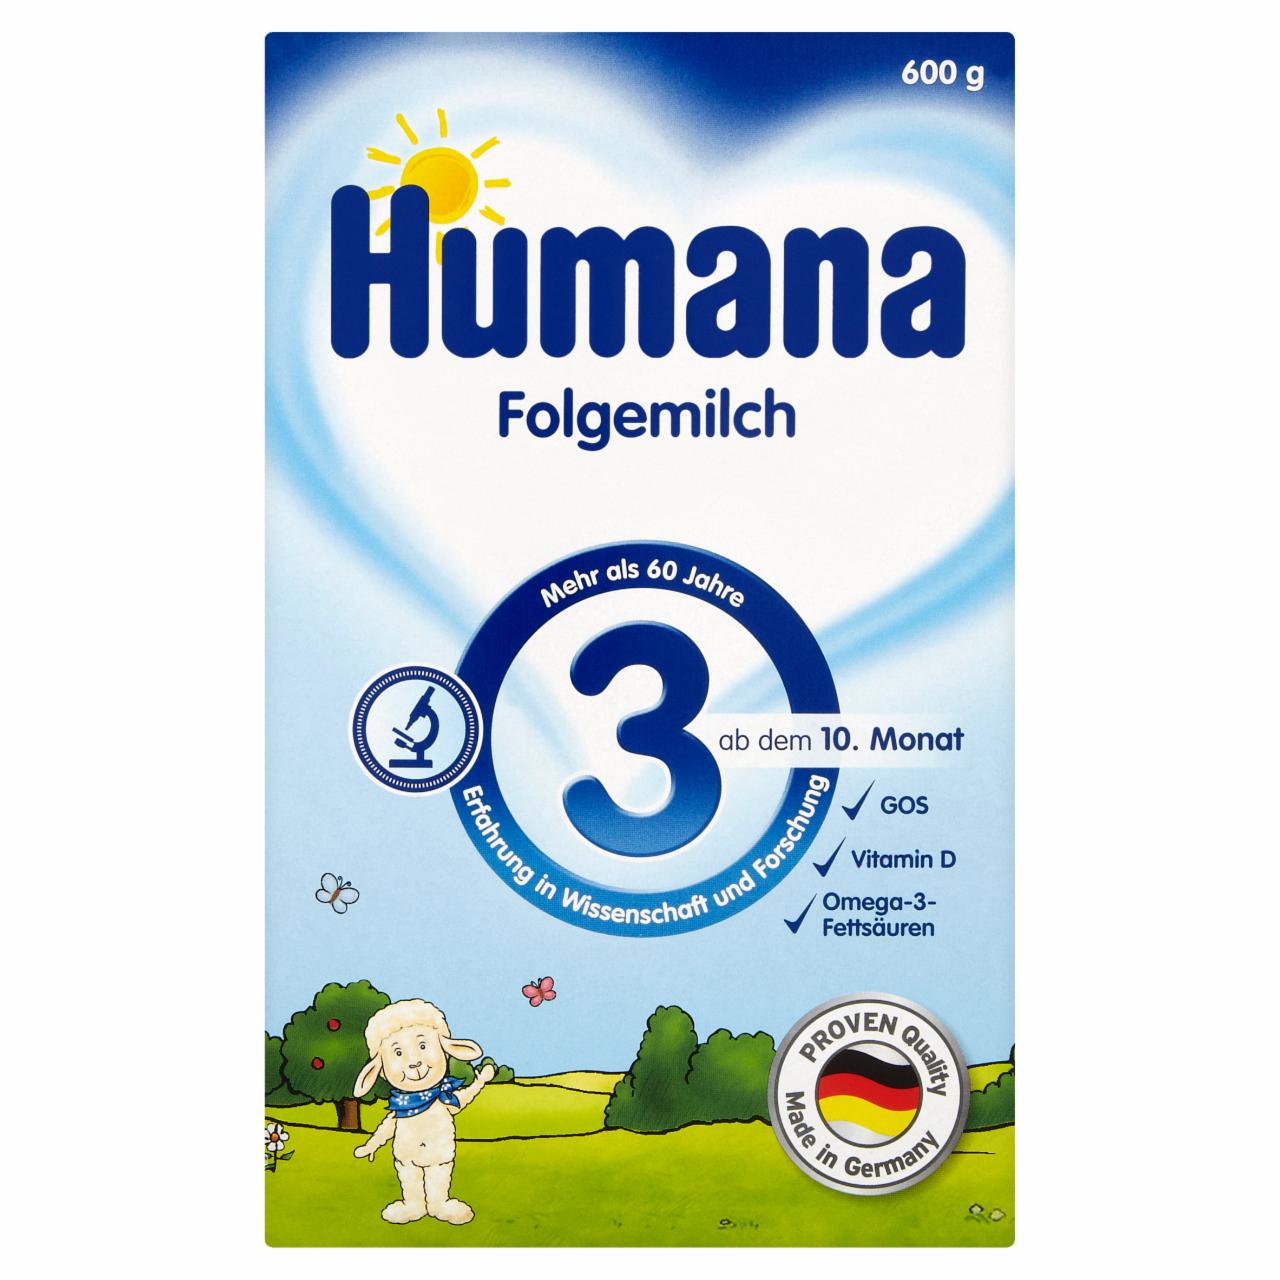 Képek - Humana 3 tejalapú anyatej-kiegészítő tápszer 10 hónapos kortól 600 g